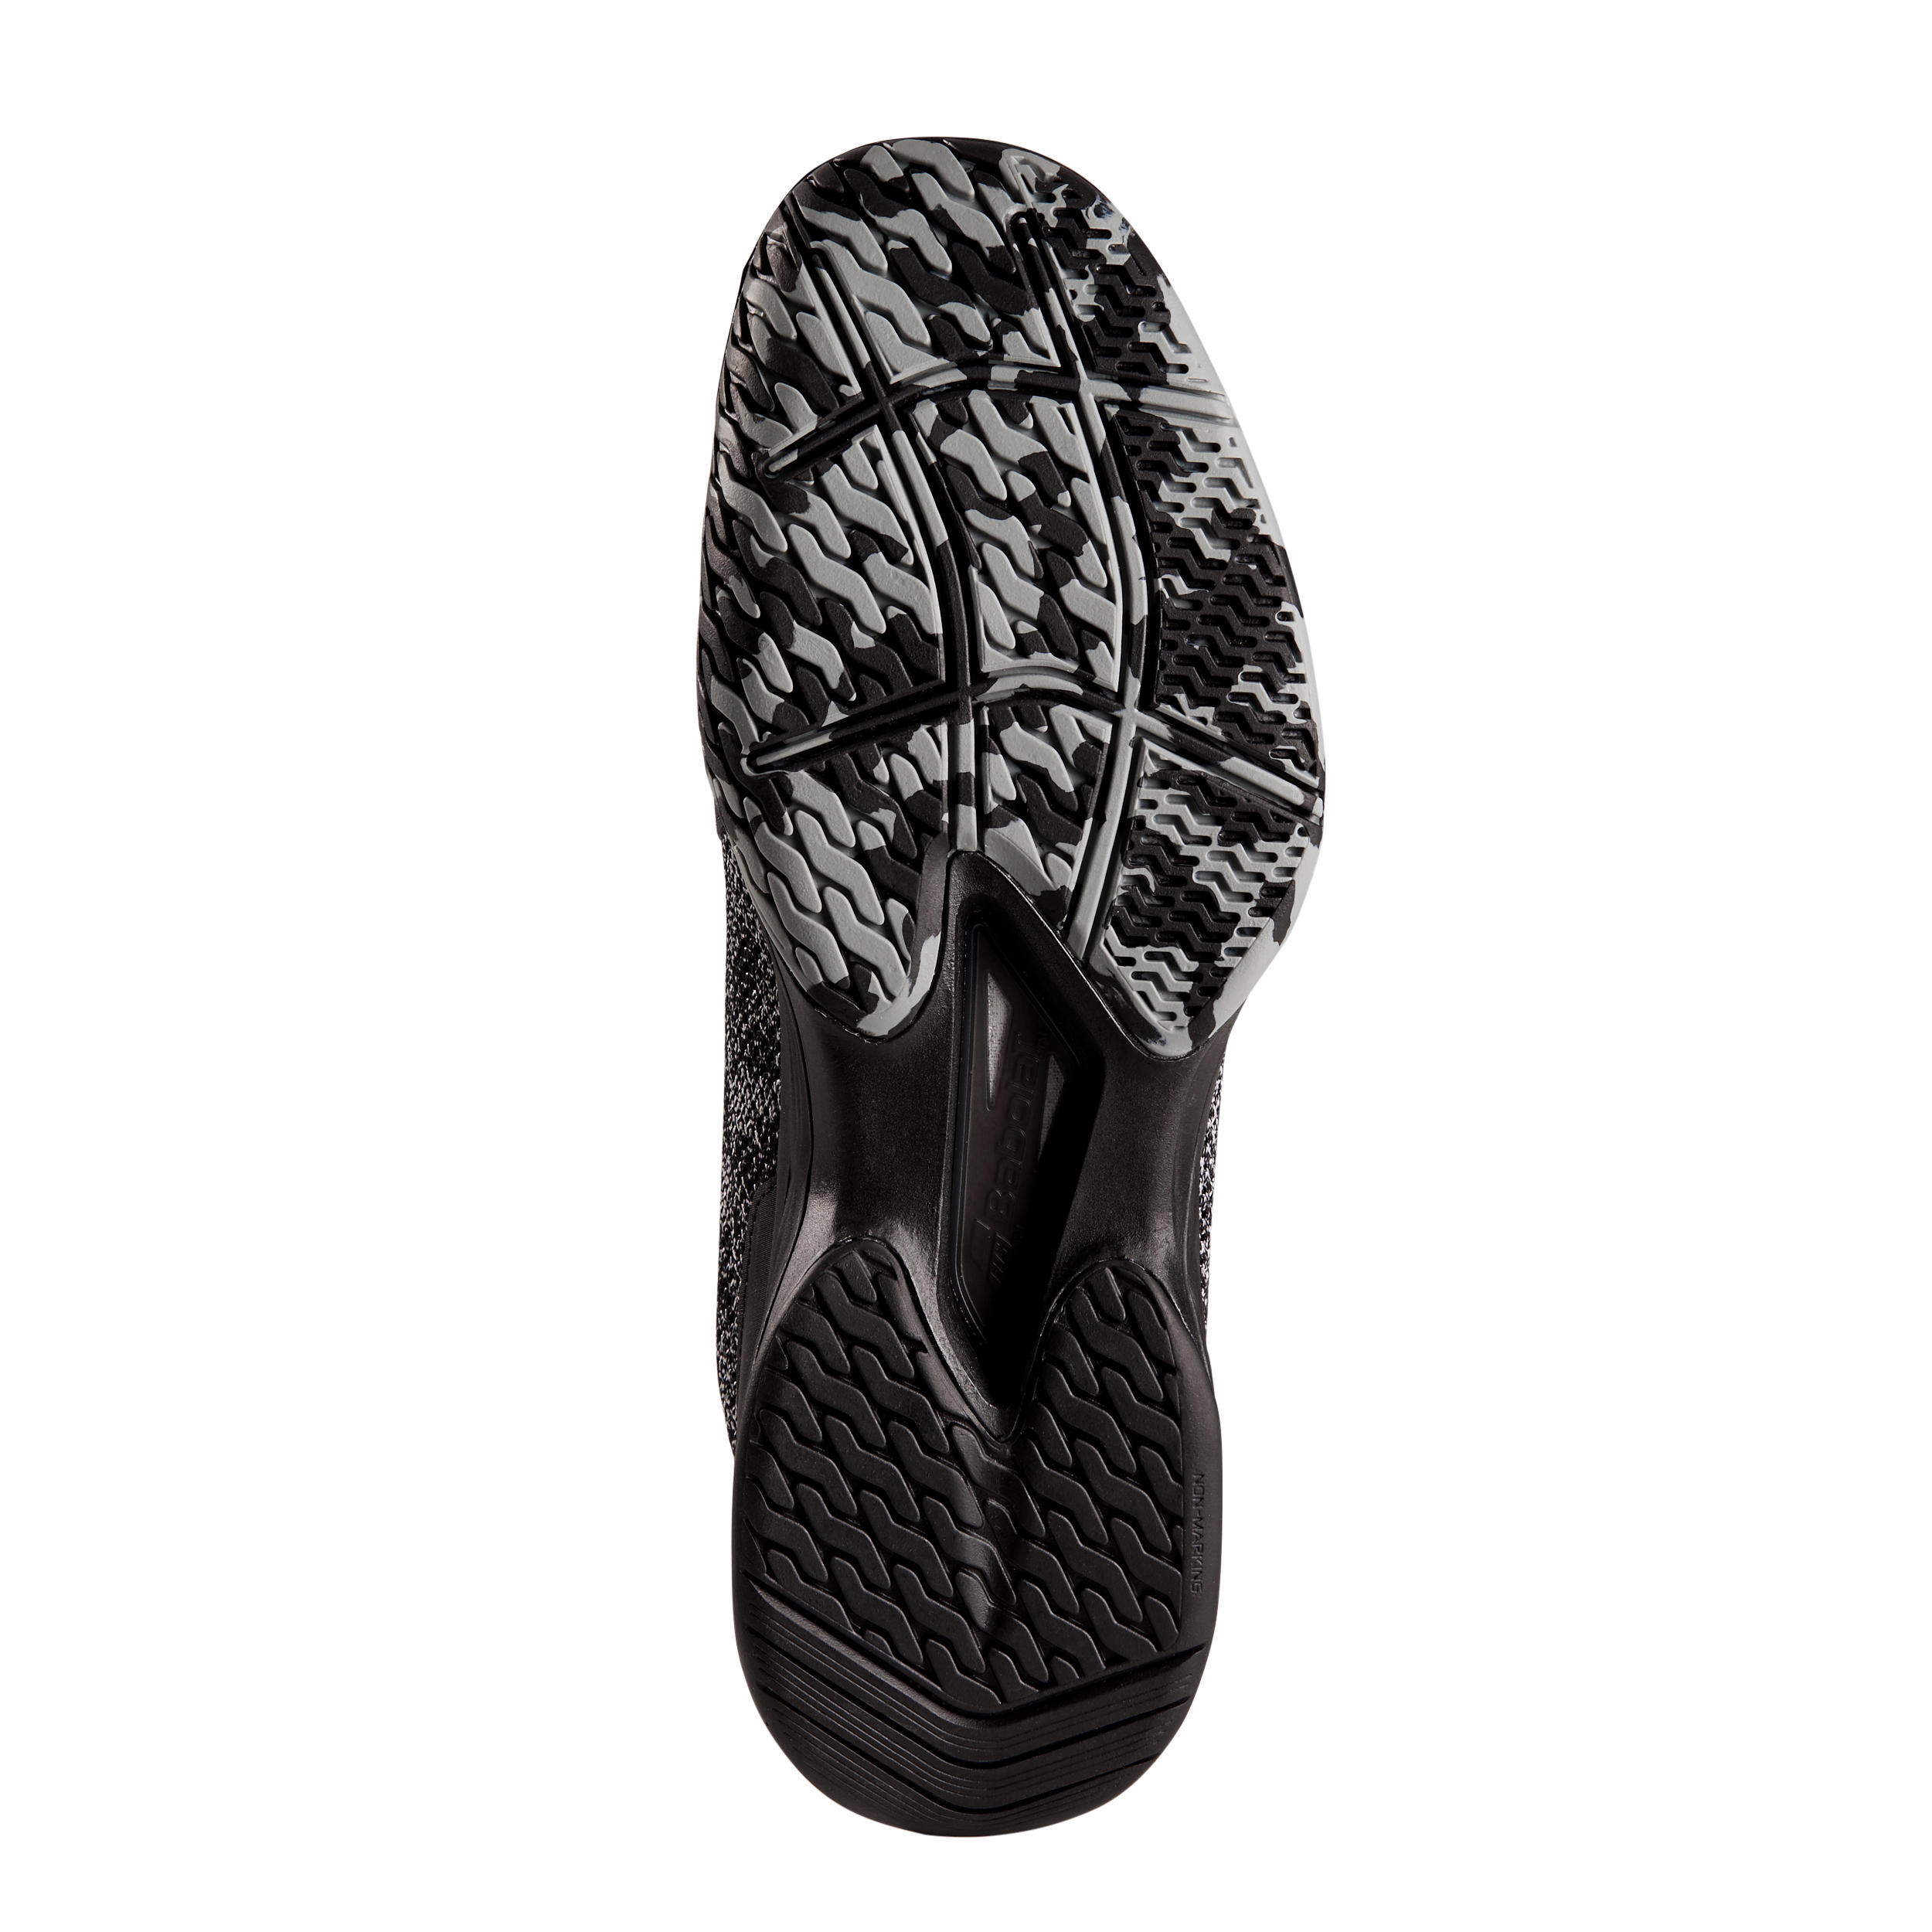 Men's Multi-Court Tennis Shoes Jet Tere - Black/Grey 5/5